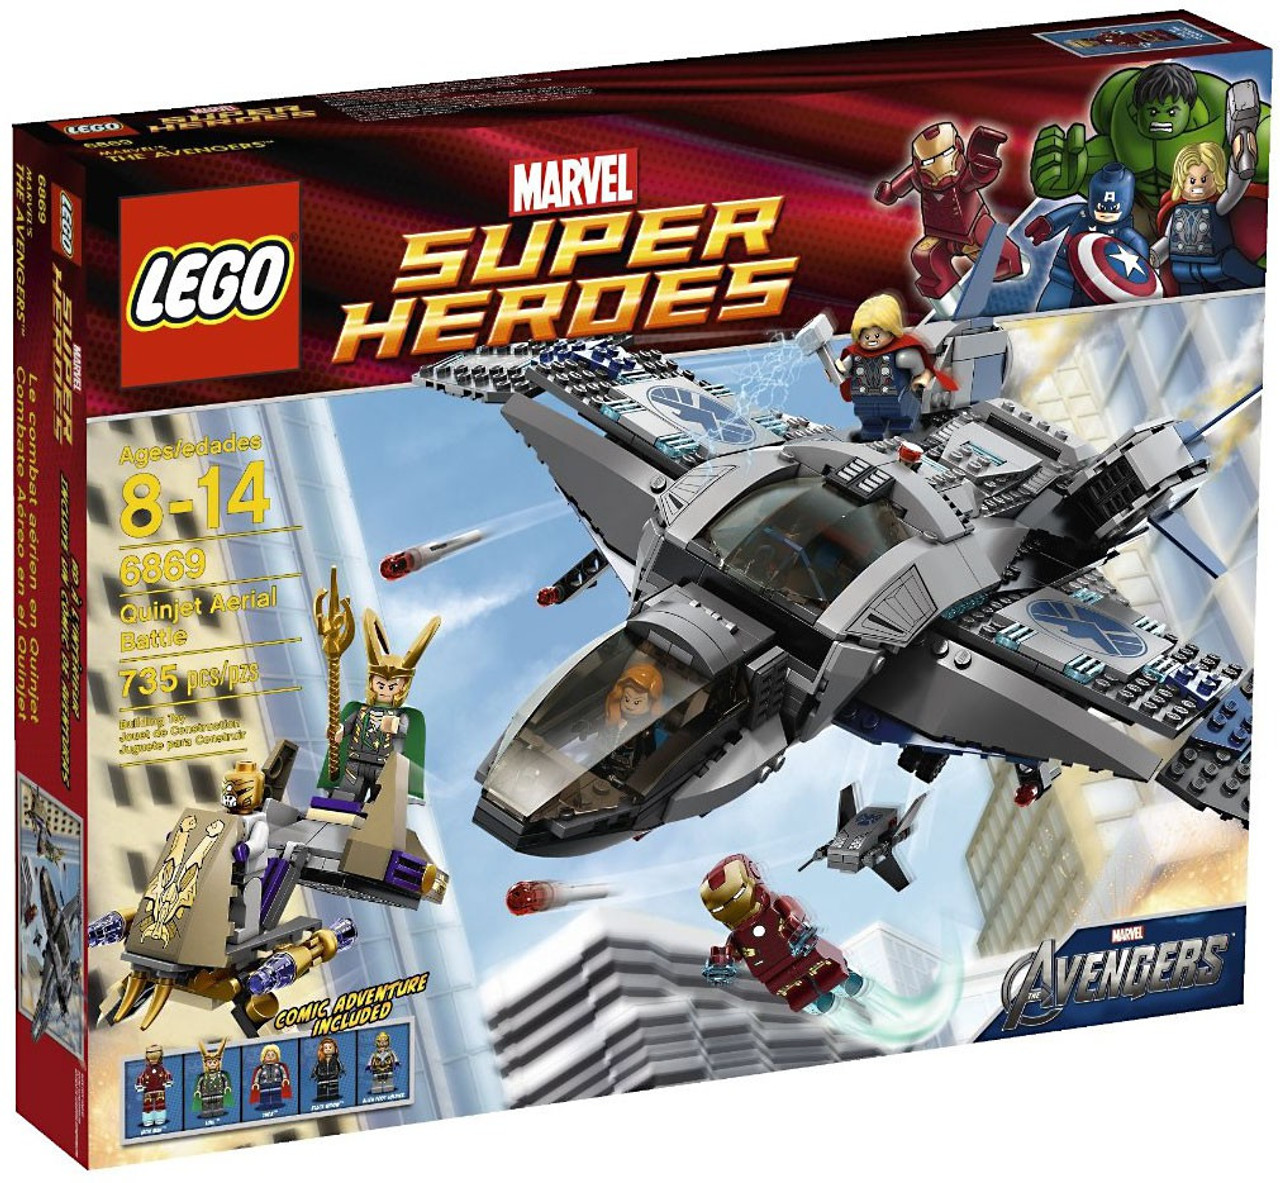 LEGO Marvel Super Heroes Avengers Quinjet Aerial Battle Set 6869 ToyWiz